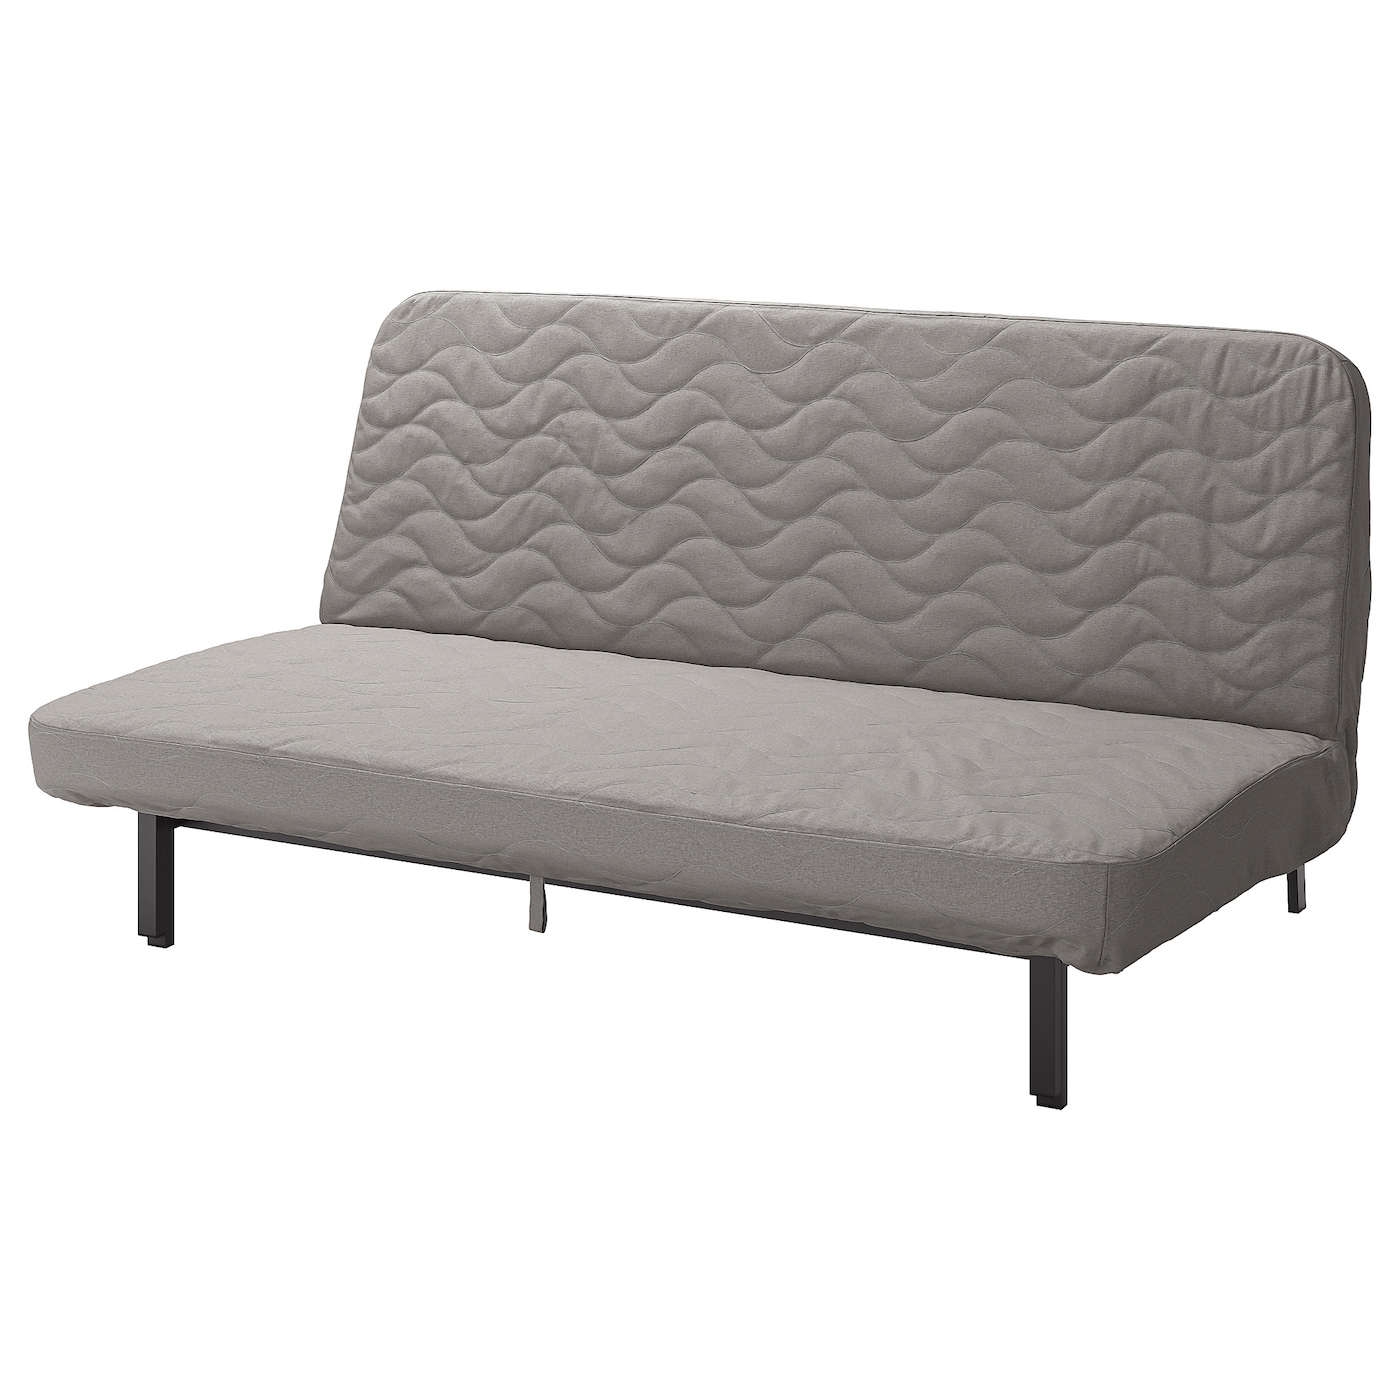 диван кровать шарм дизайн бит 2 серый кровать NYHAMN 3-местный диван-кровать, поролоновый матрас в комплекте/Книса серый/бежевый IKEA